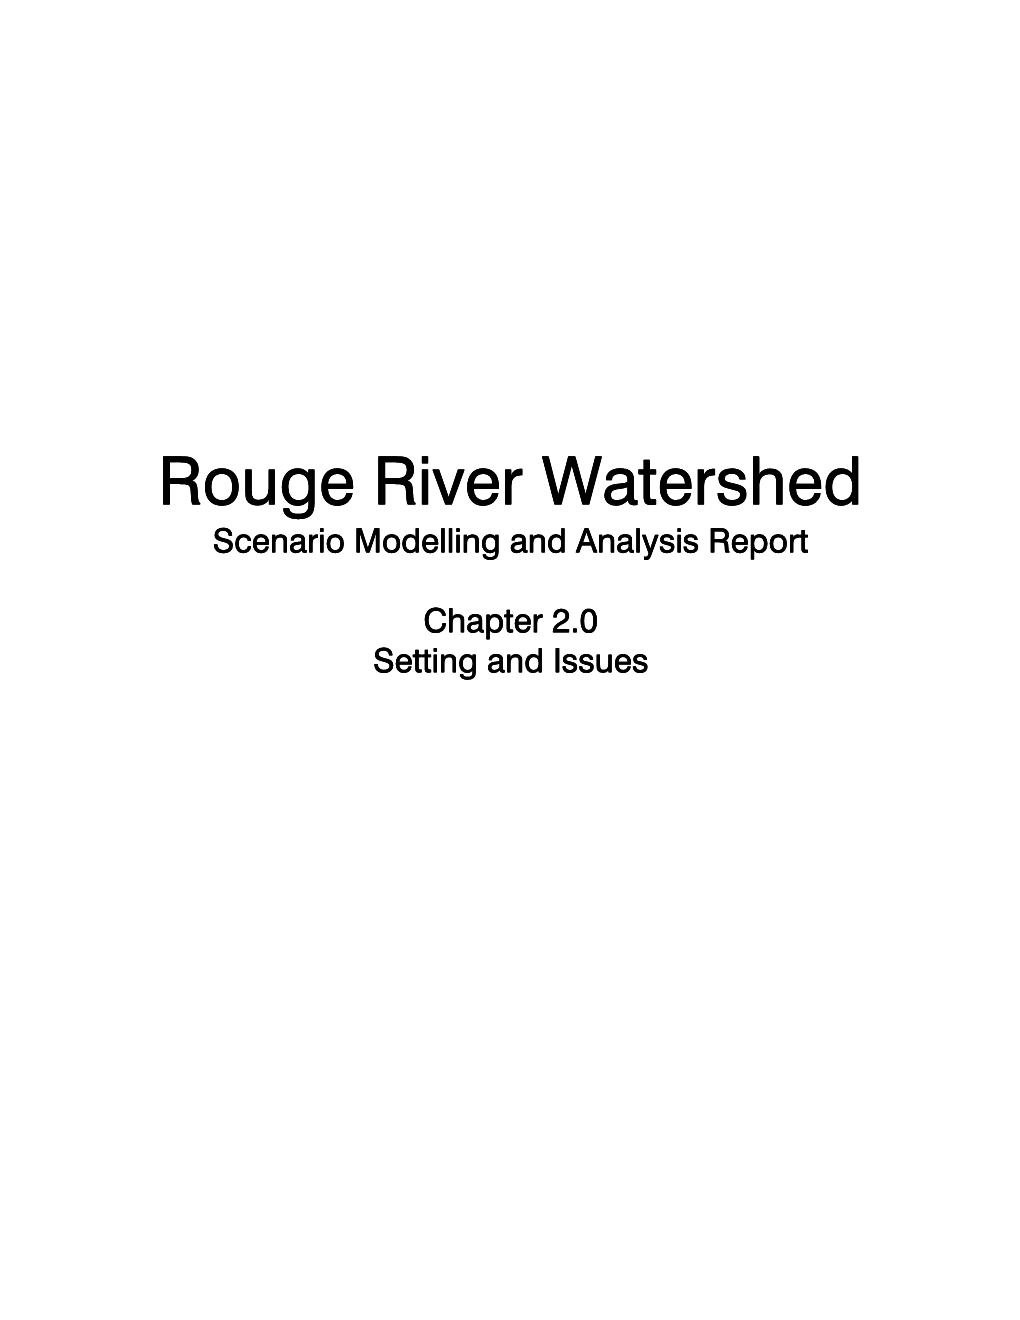 Rouge River Rouge River Watershed Watershed Watershed